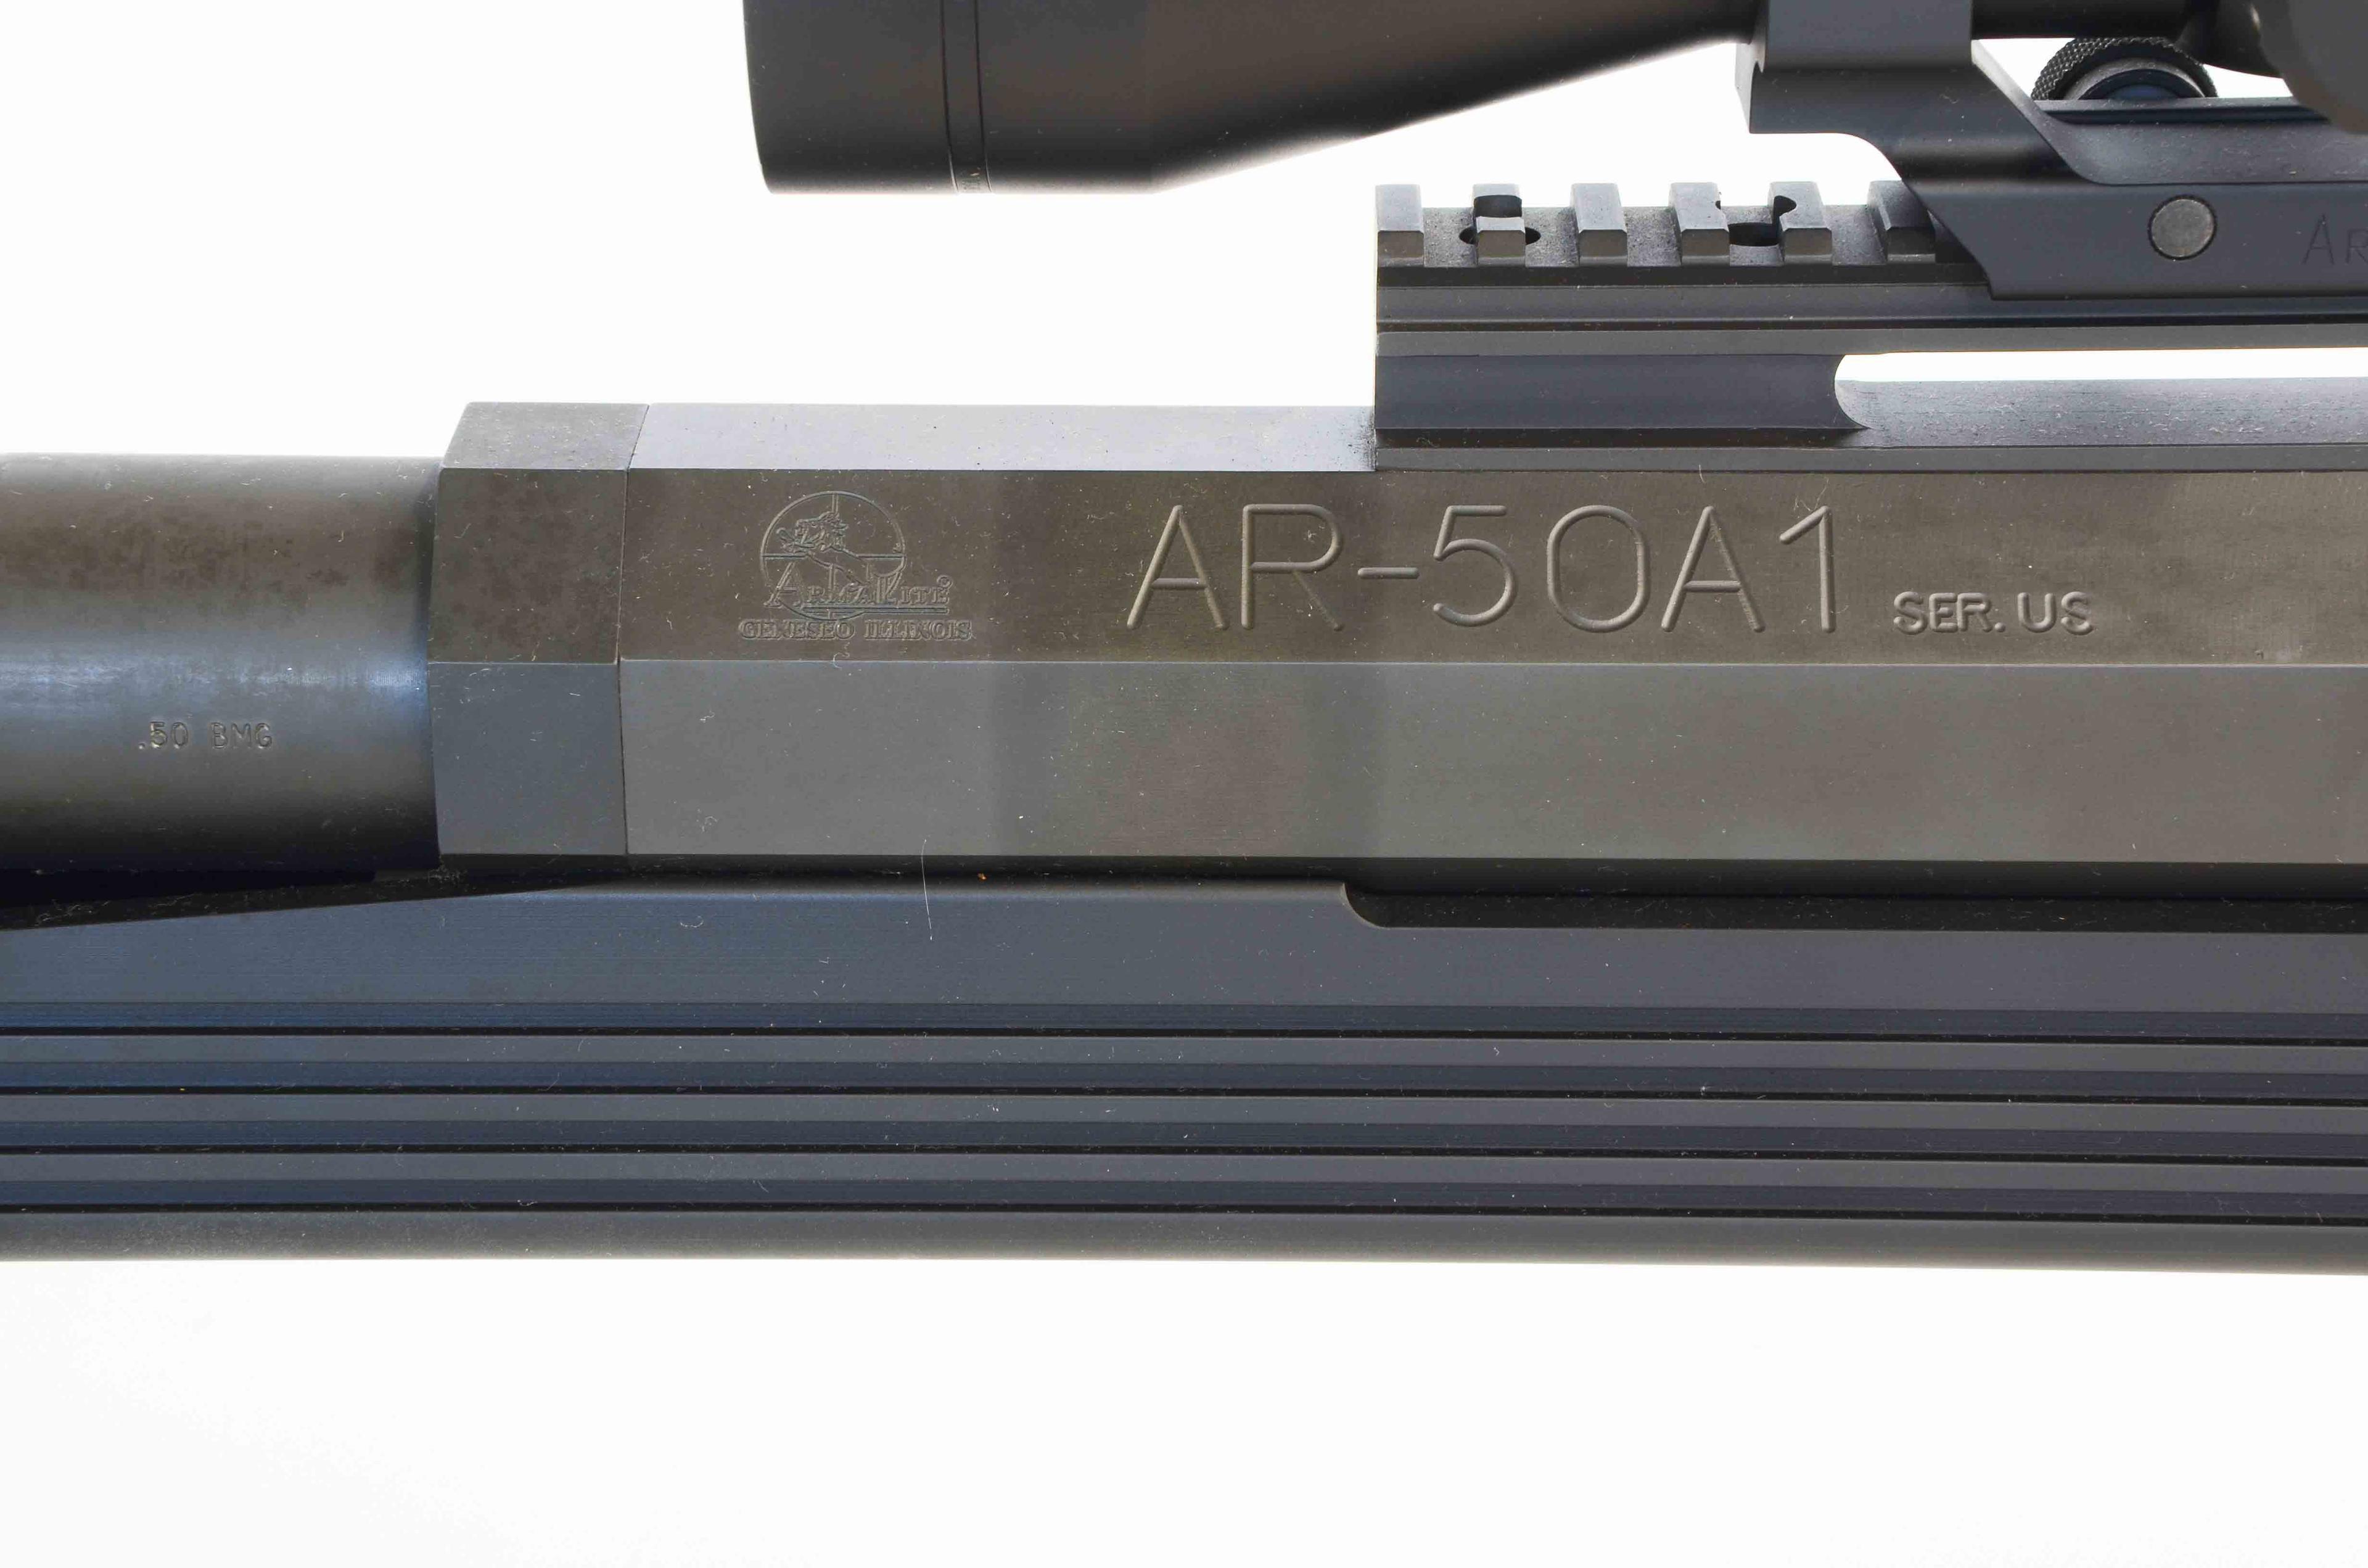 Armalite AR-50A1 .50 BMG Bolt Action Rifle